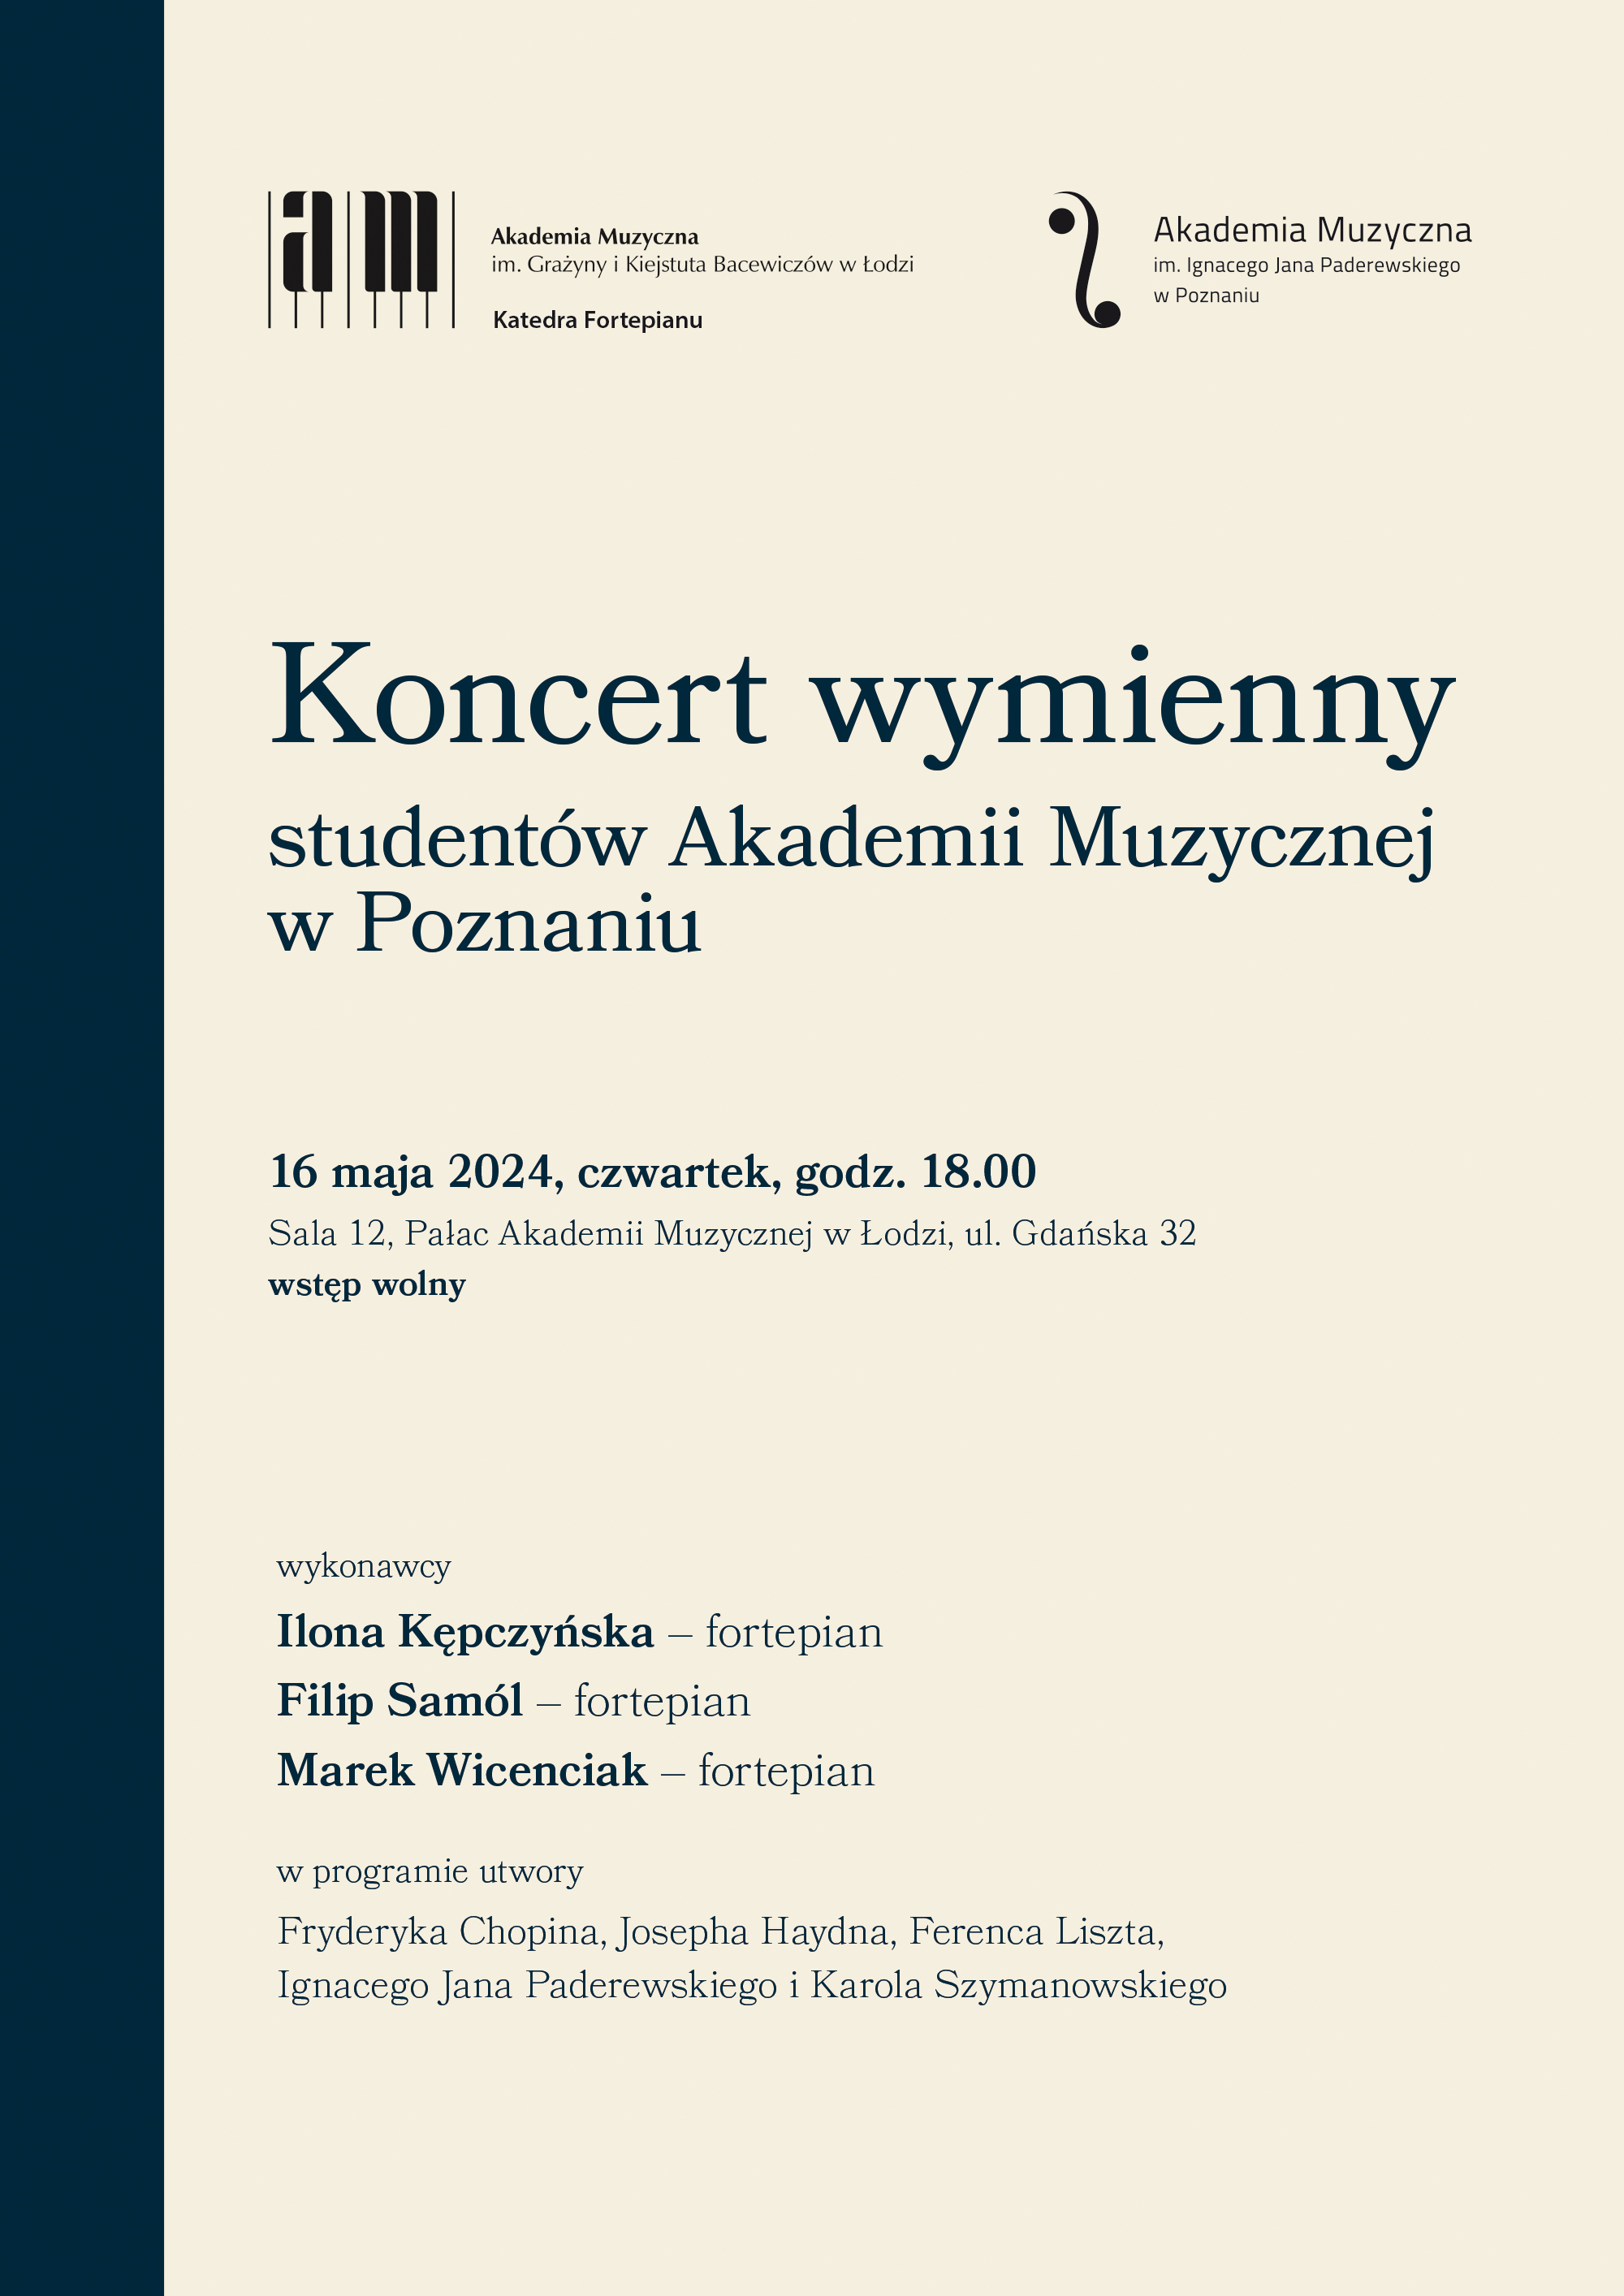 Koncert wymienny ze studentami Akademii Muzycznej w Poznaniu